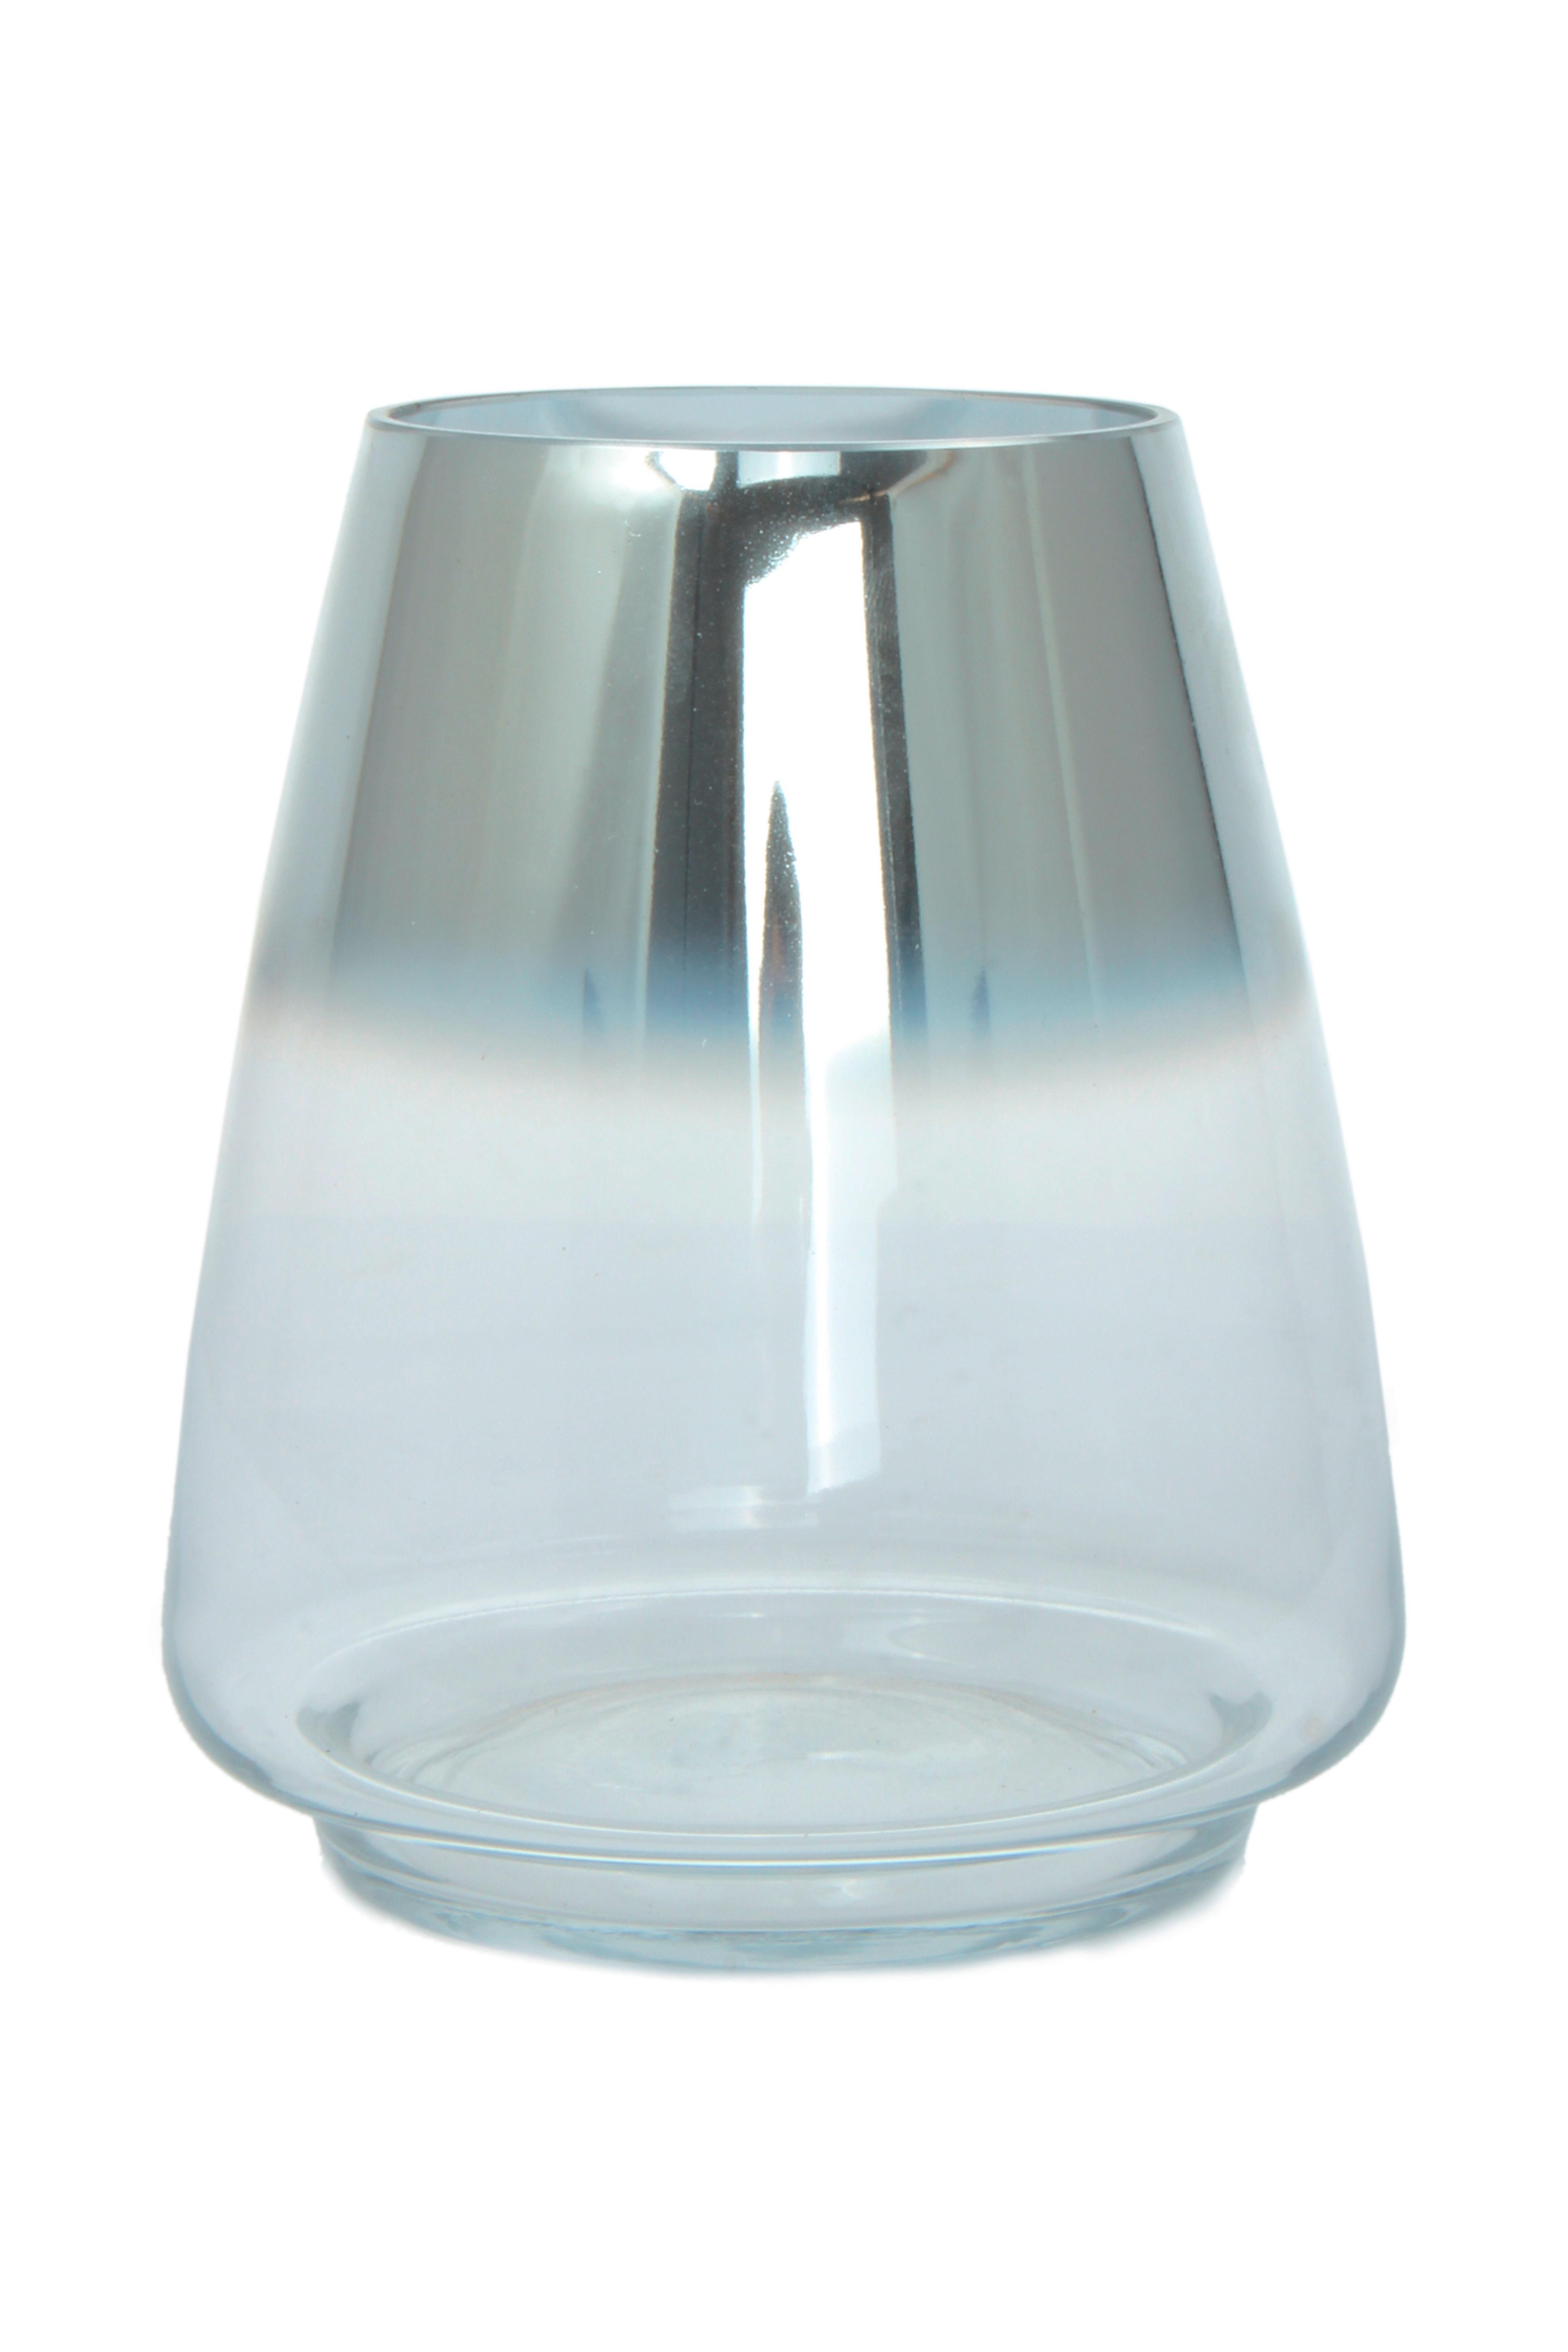 Vase Saigon Bauchig Glas Silber H: 18,5 cm - Silberfarben, Design, Glas (16/18,5/16cm)